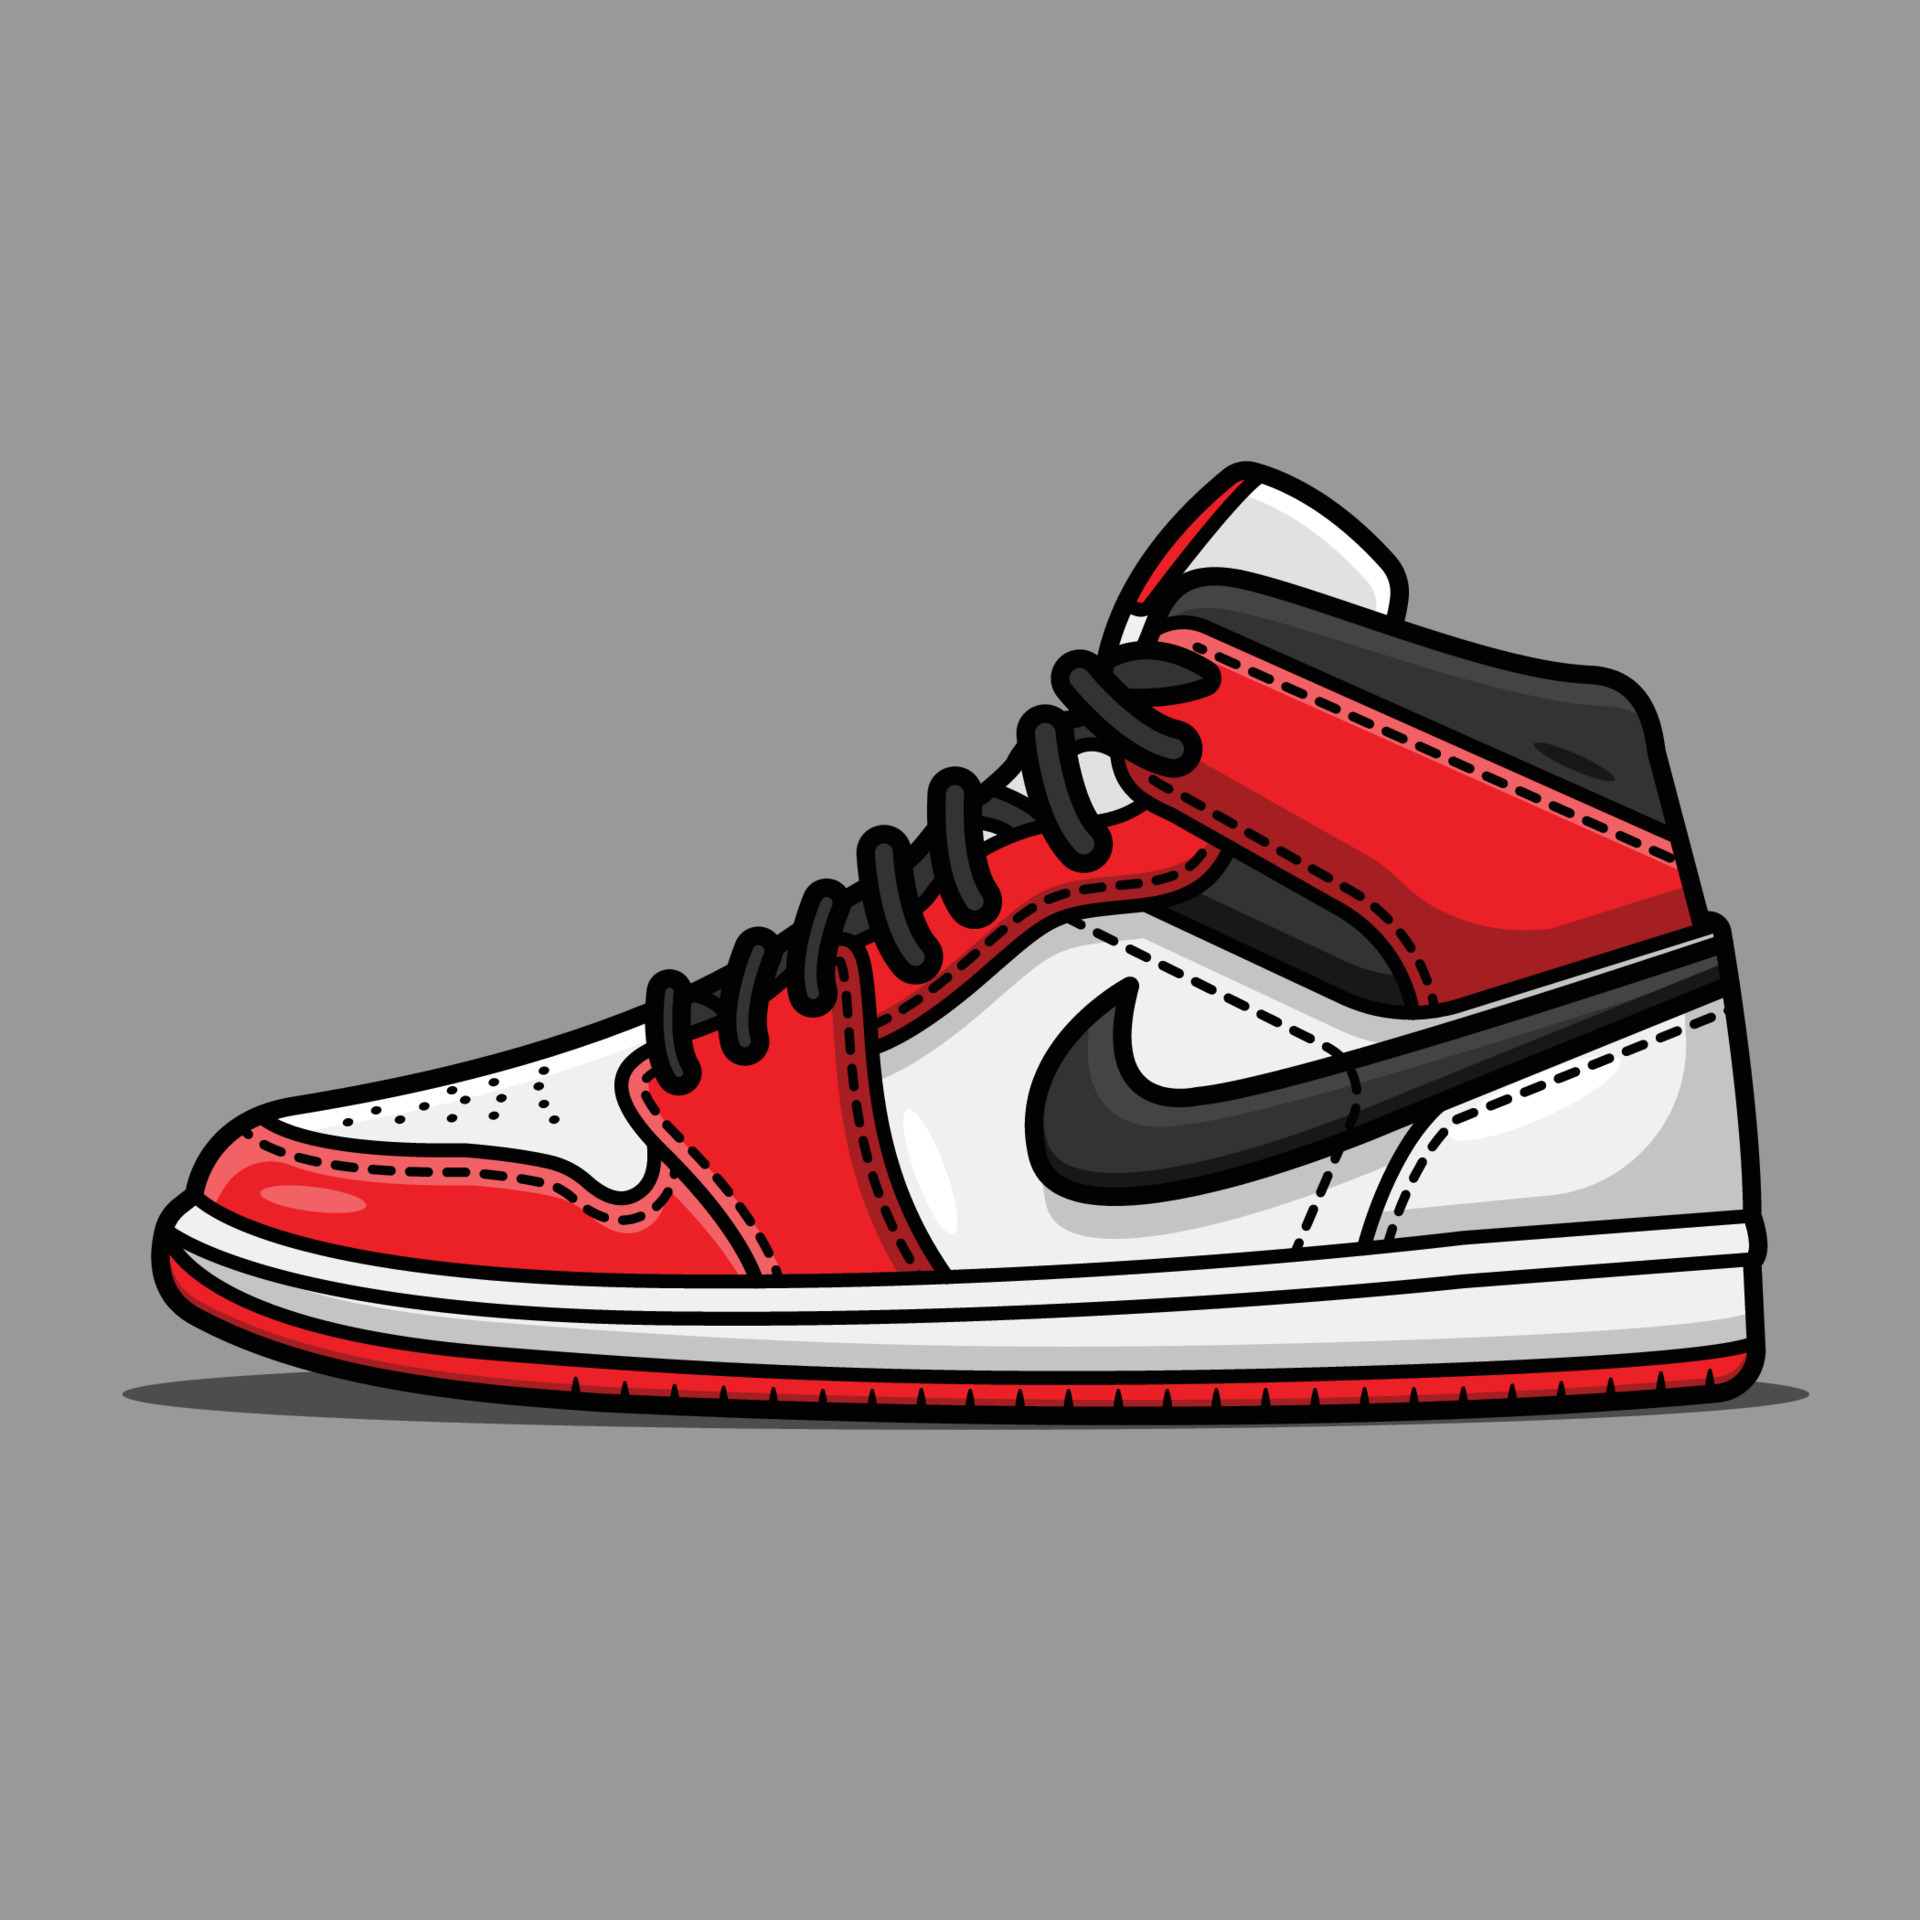 Jordan Sneakers Vector Art, Icons, and 